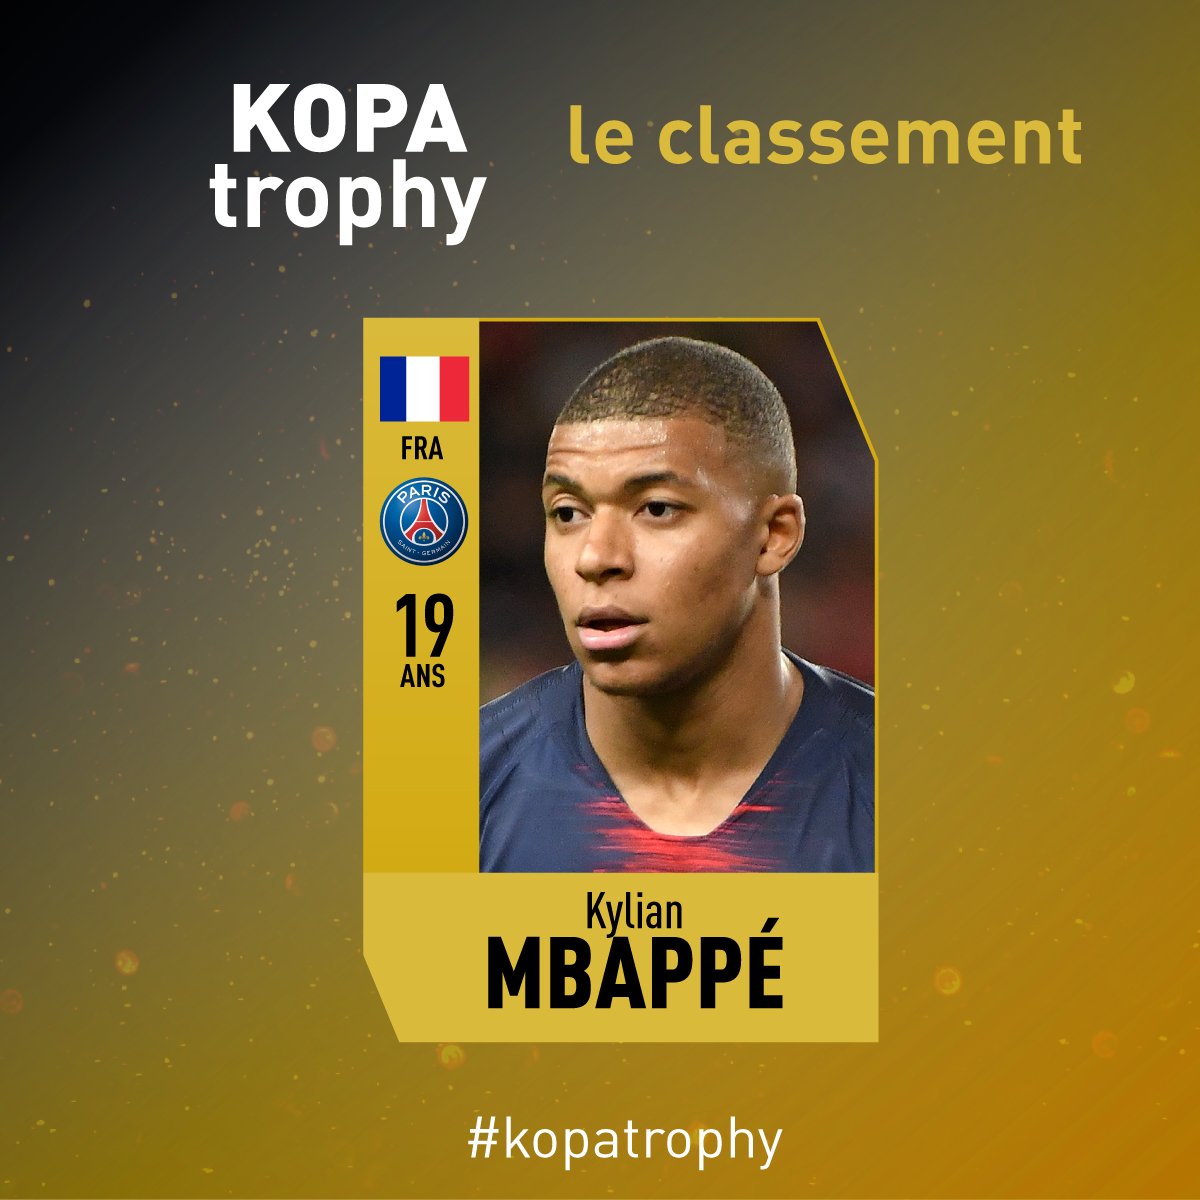 توپ طلا - جایزه کوپا - فرانس فوتبال 2018 - Kopa trophy - France forward